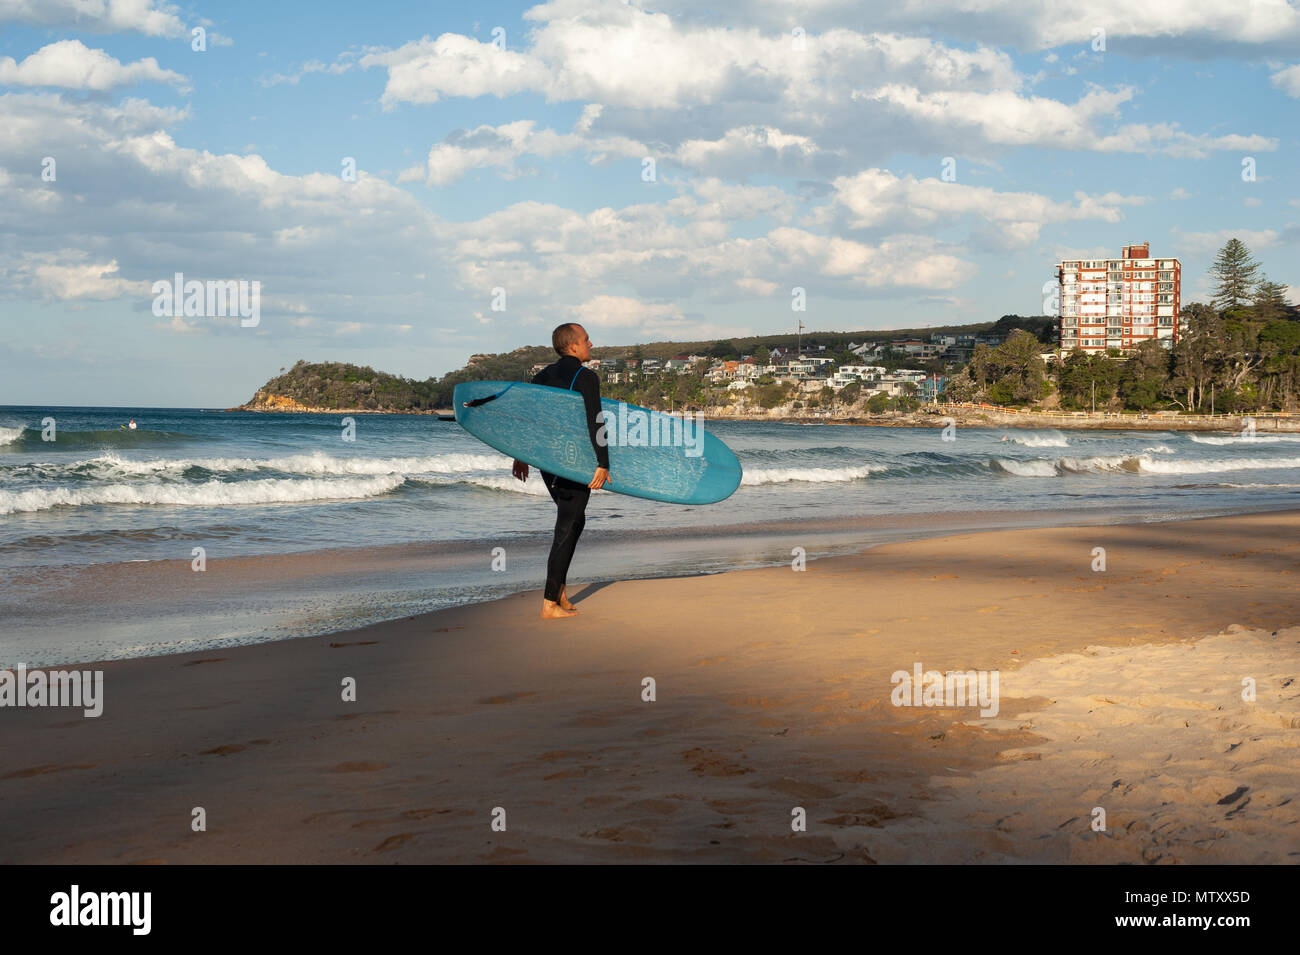 10.05.2018, Sydney, Nouvelle-Galles du Sud, Australie - un homme marche le long de la plage de Manly avec sa planche de surf sous le bras. Banque D'Images